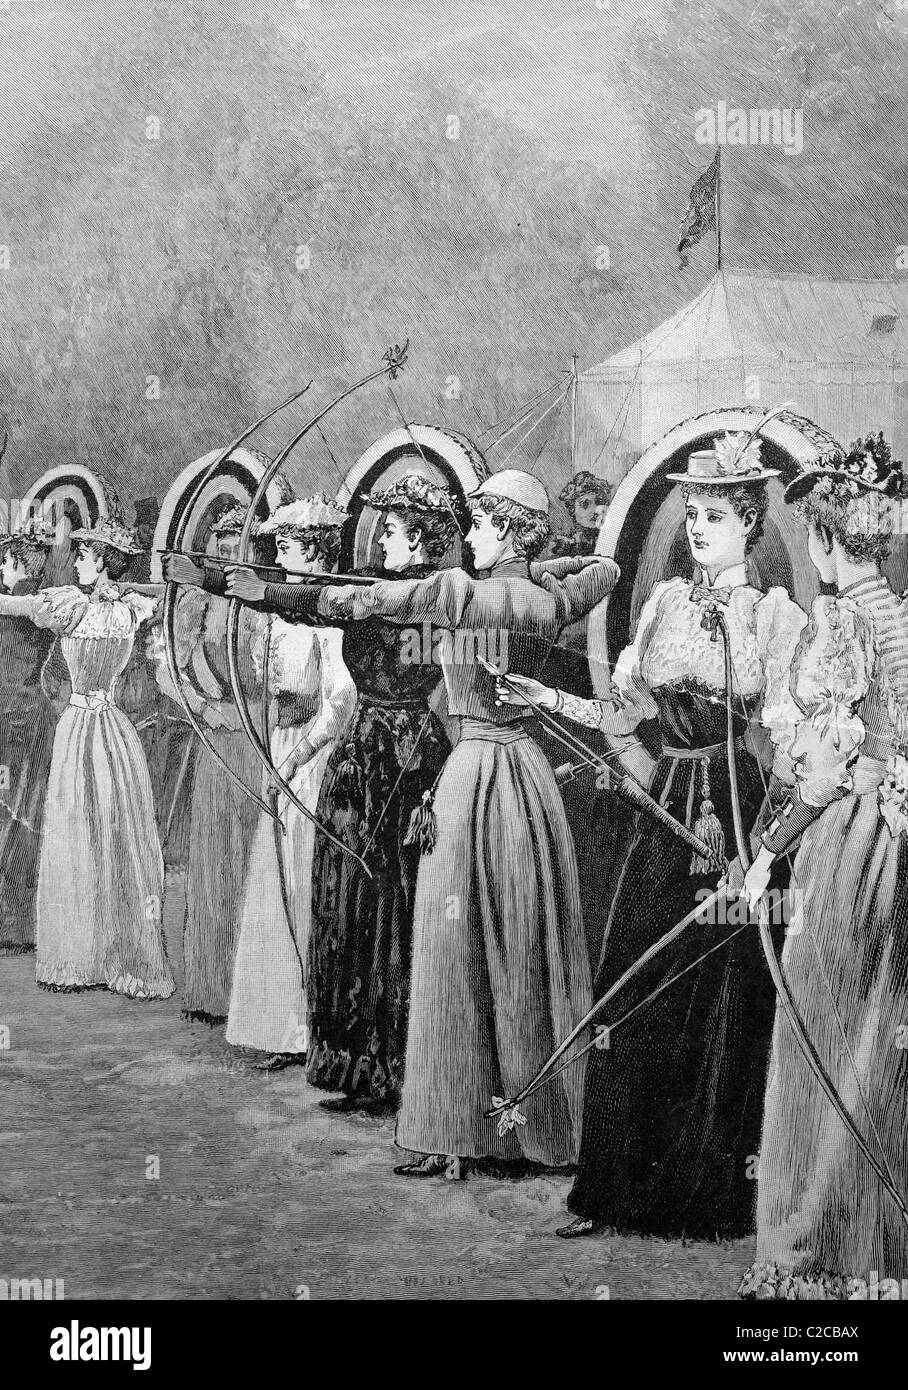 La competencia de mujeres en el tiro con arco en el Regent Park en Londres, Inglaterra, ilustración histórica, ca. 1893 Foto de stock